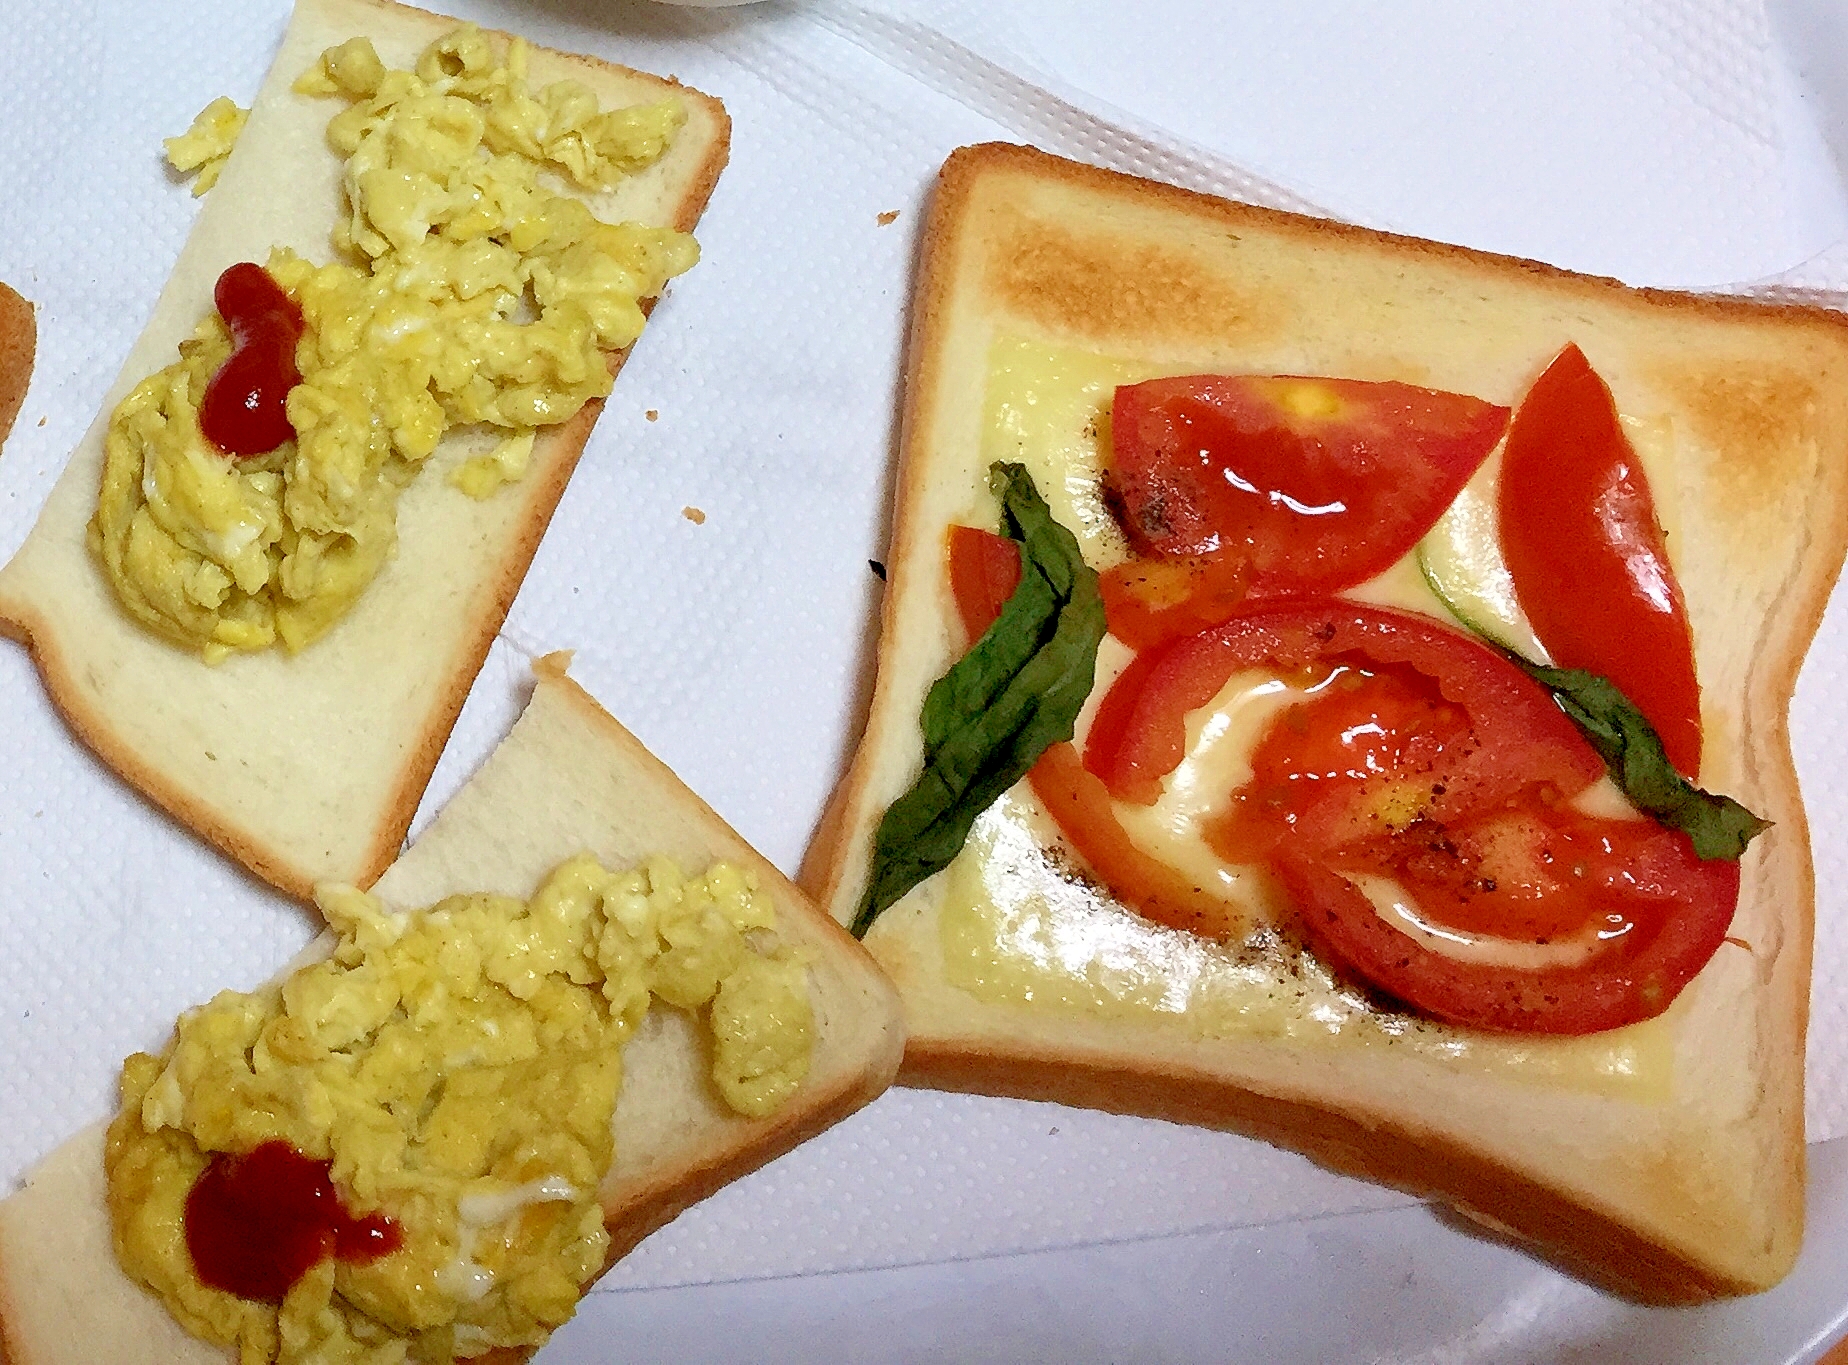 朝のトースト 2種(マルゲリータ風、炒り卵)